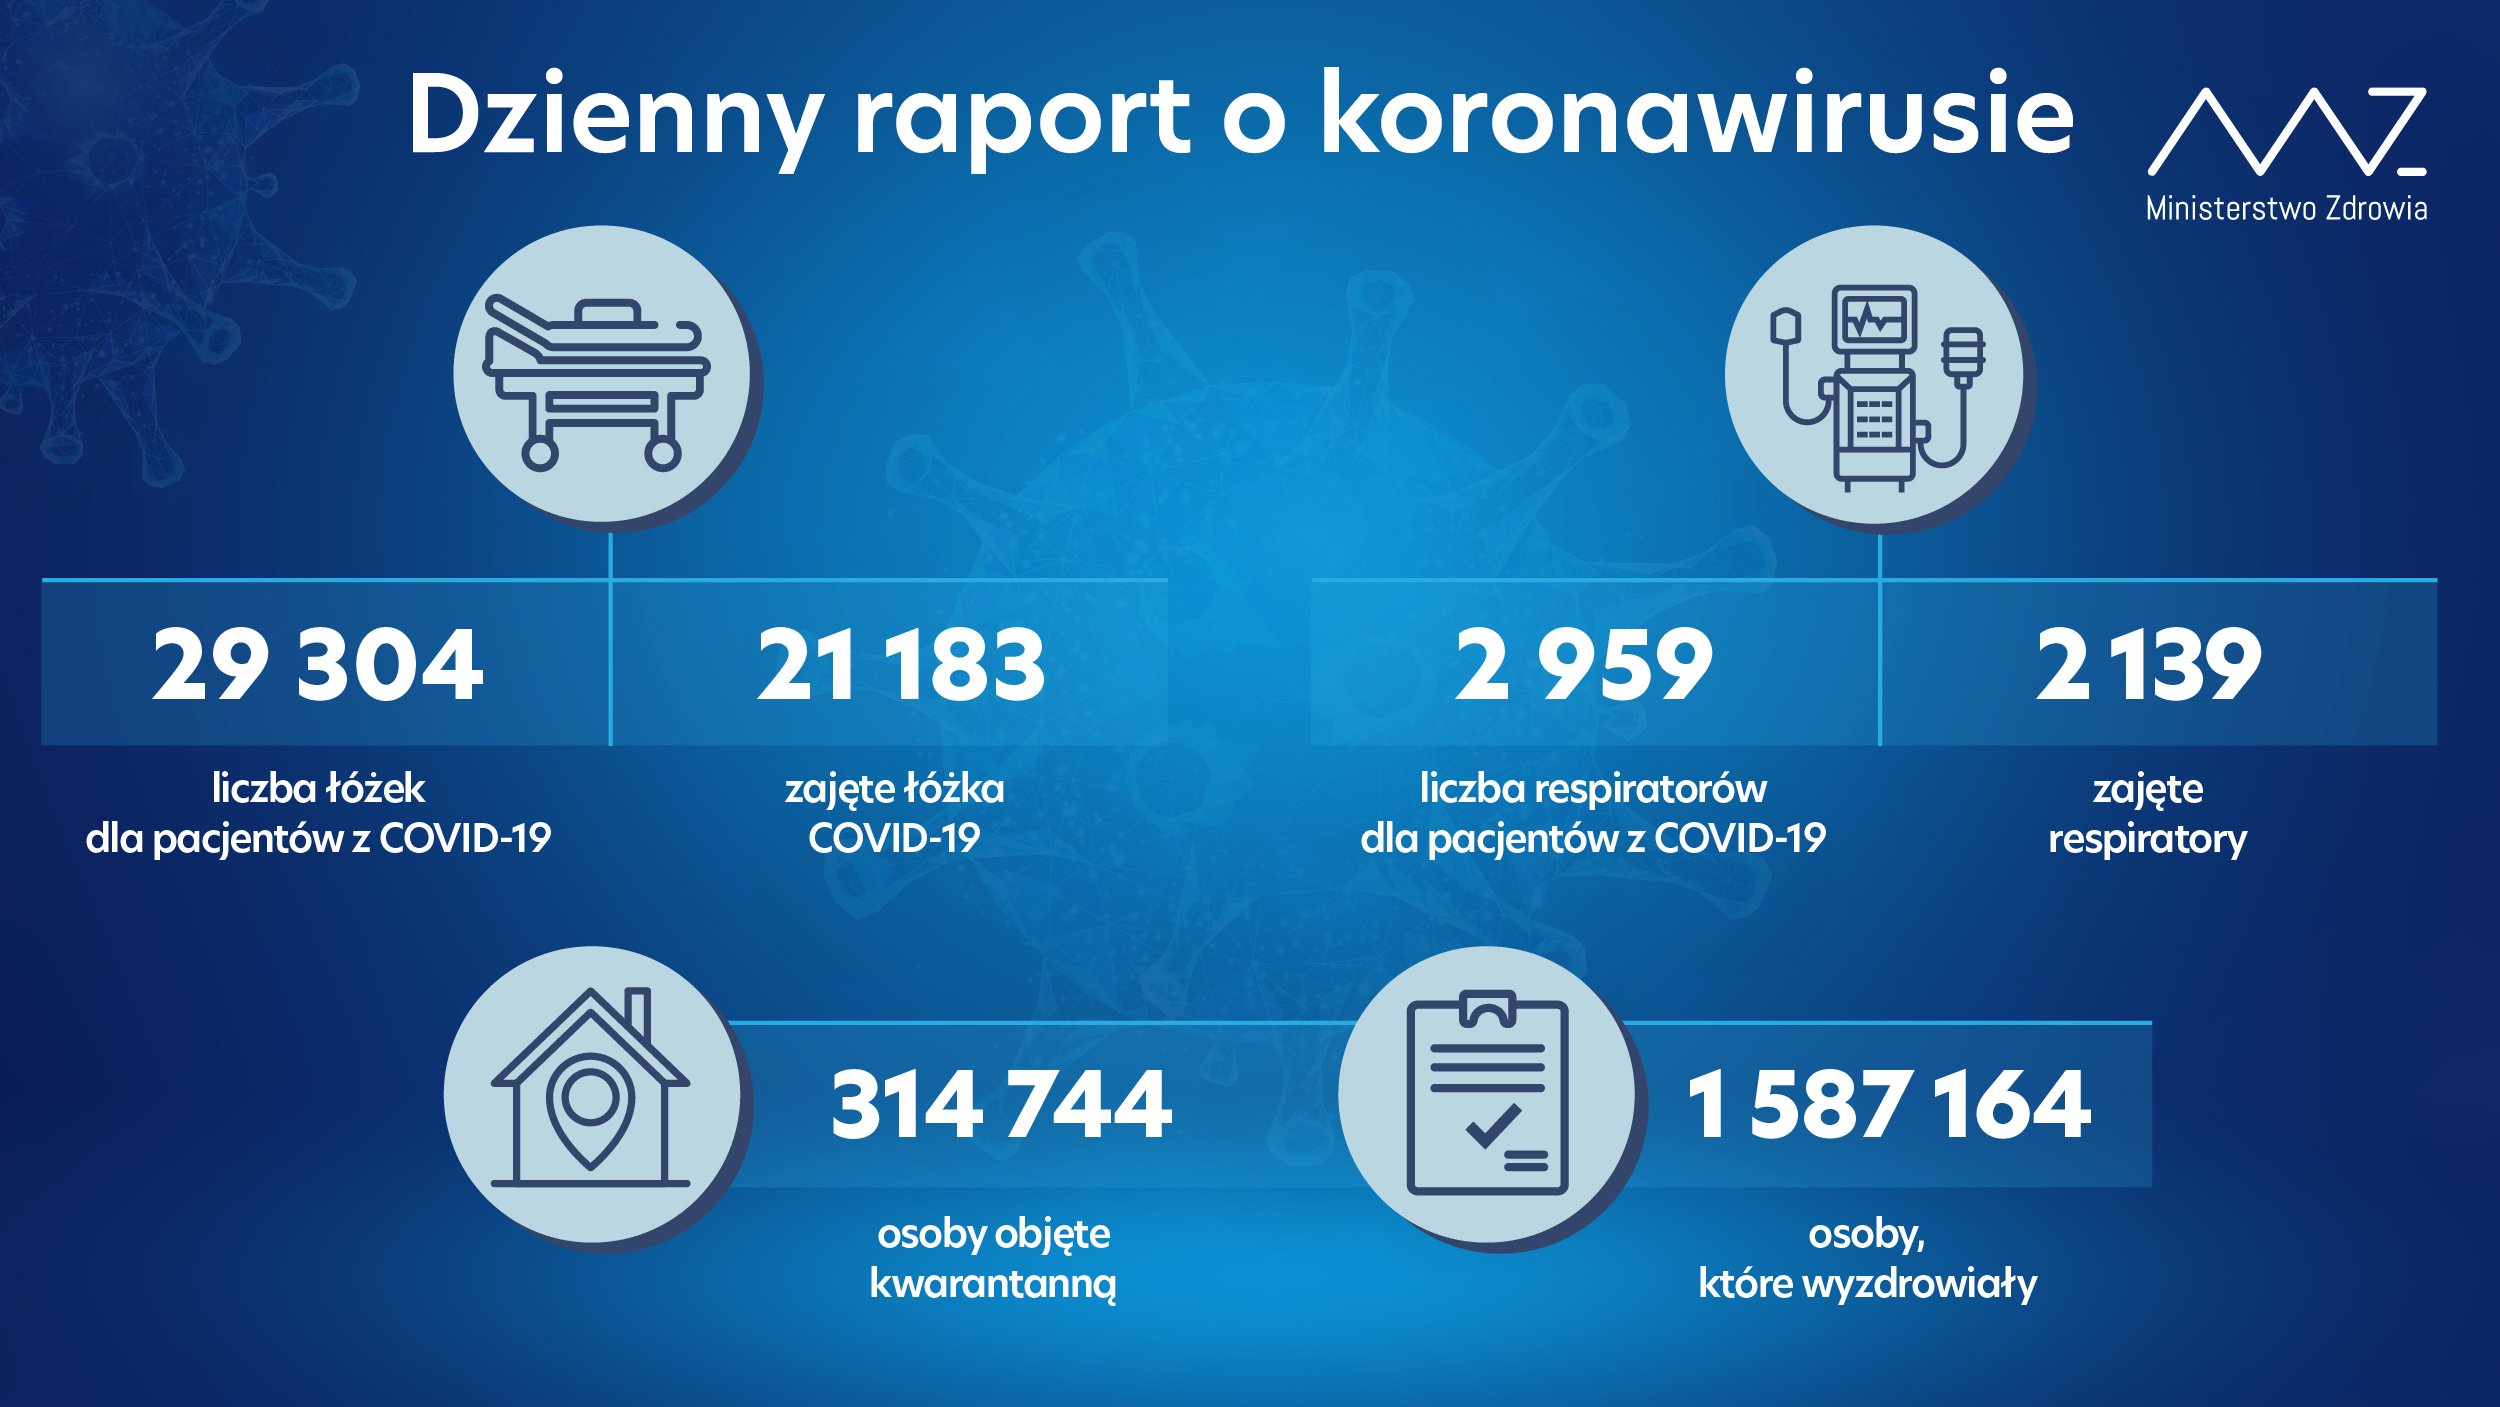 14 396 nowych zakażeń koronawirusem. W ciągu ostatniej doby liczba zajętych łóżek COVID-19 wzrosła o ponad 900